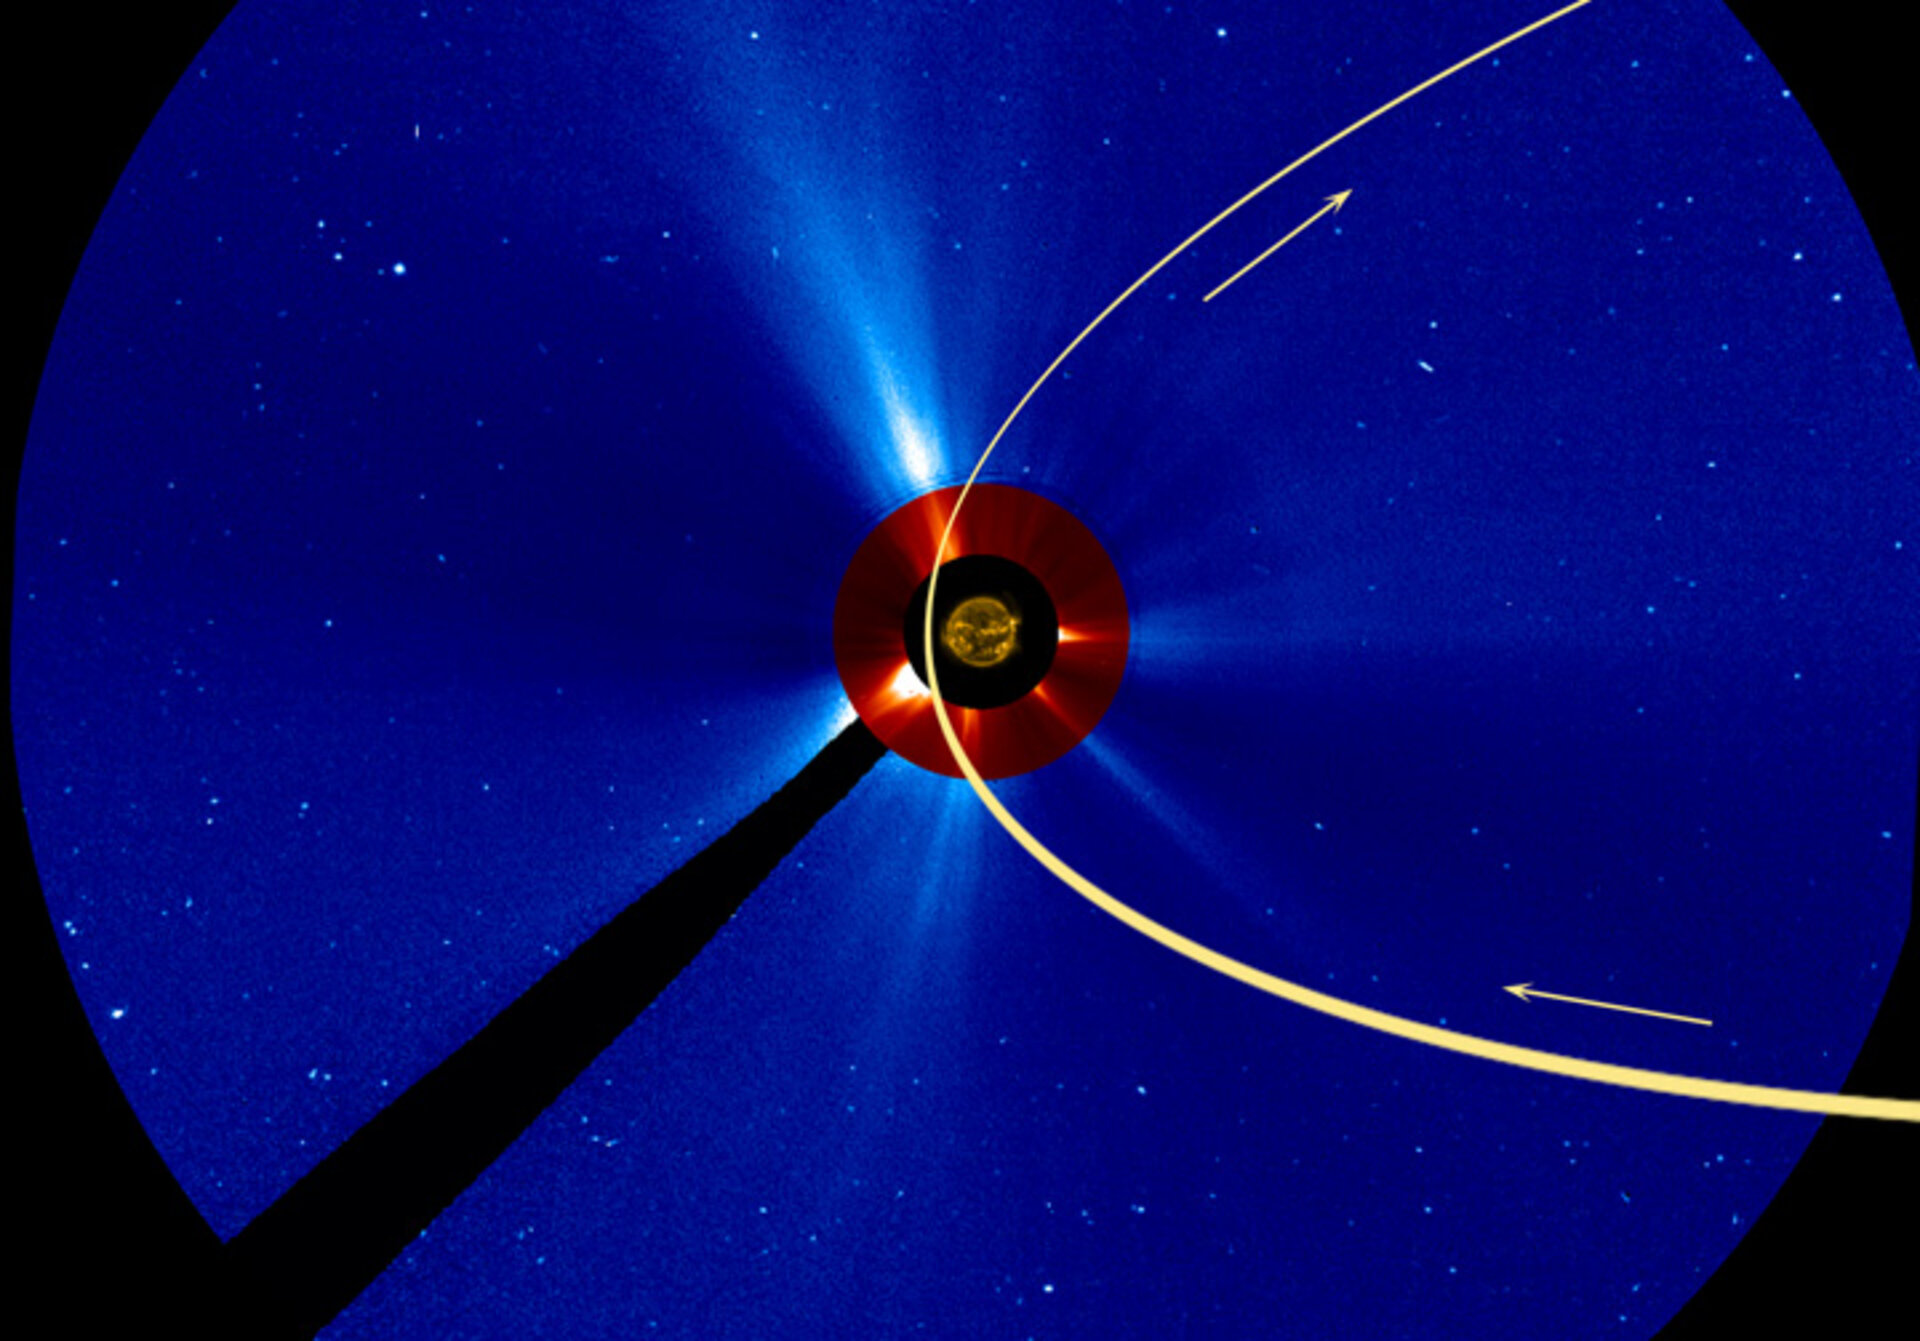 Comet ISON’s orbit around the Sun